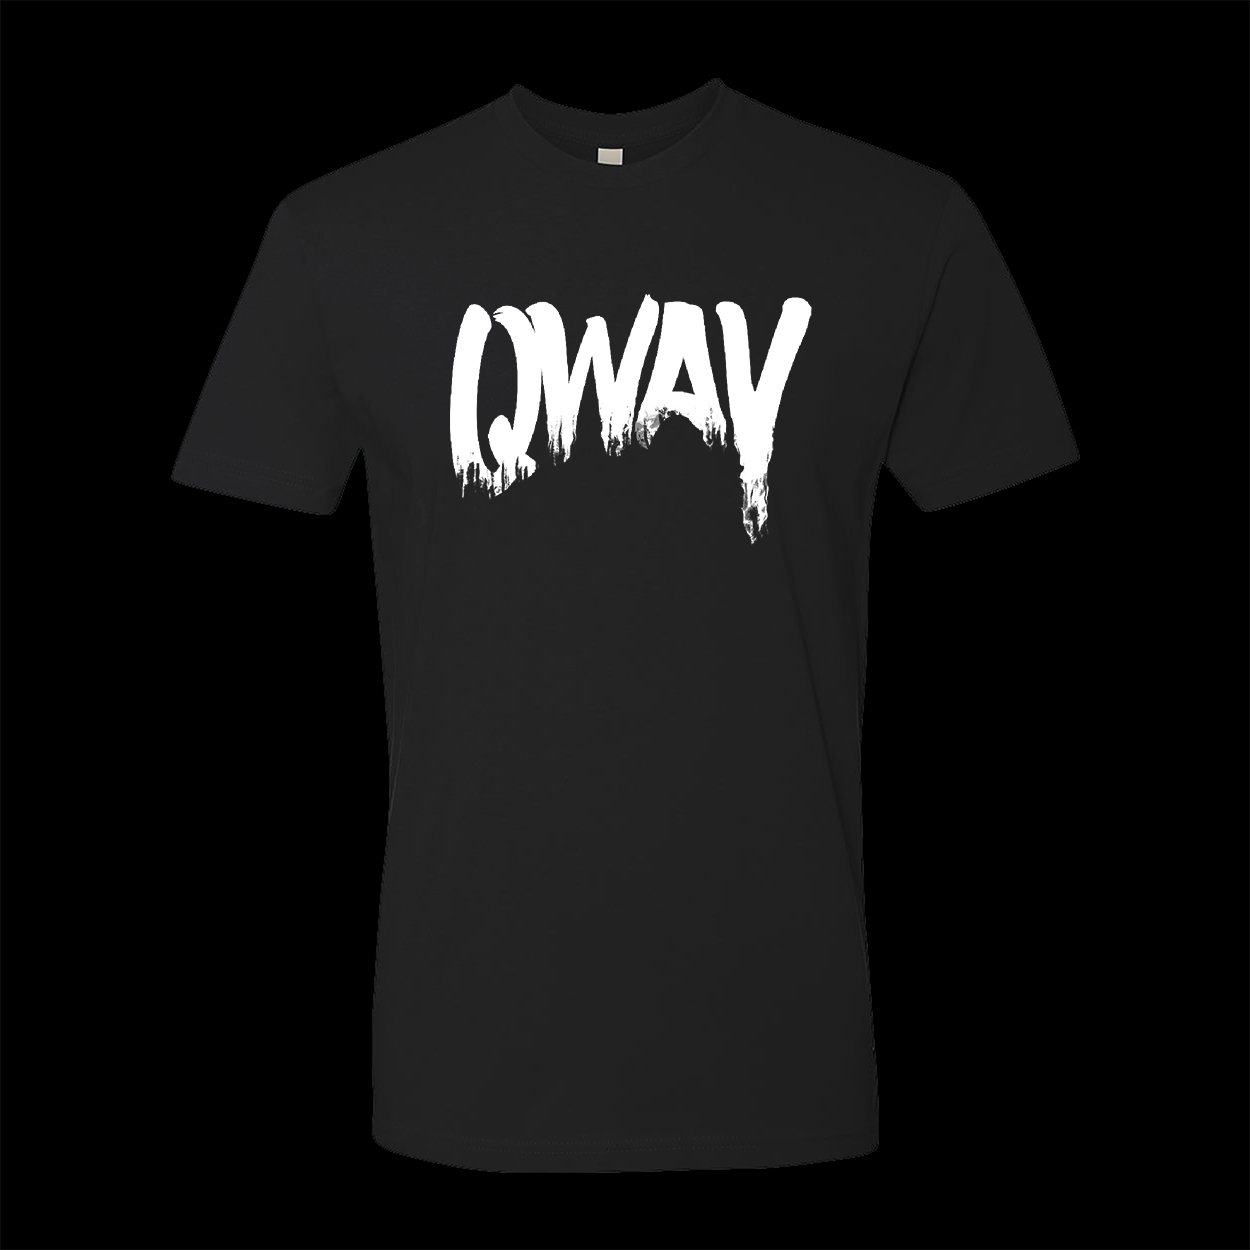 Qway Logo t-shirt Black color